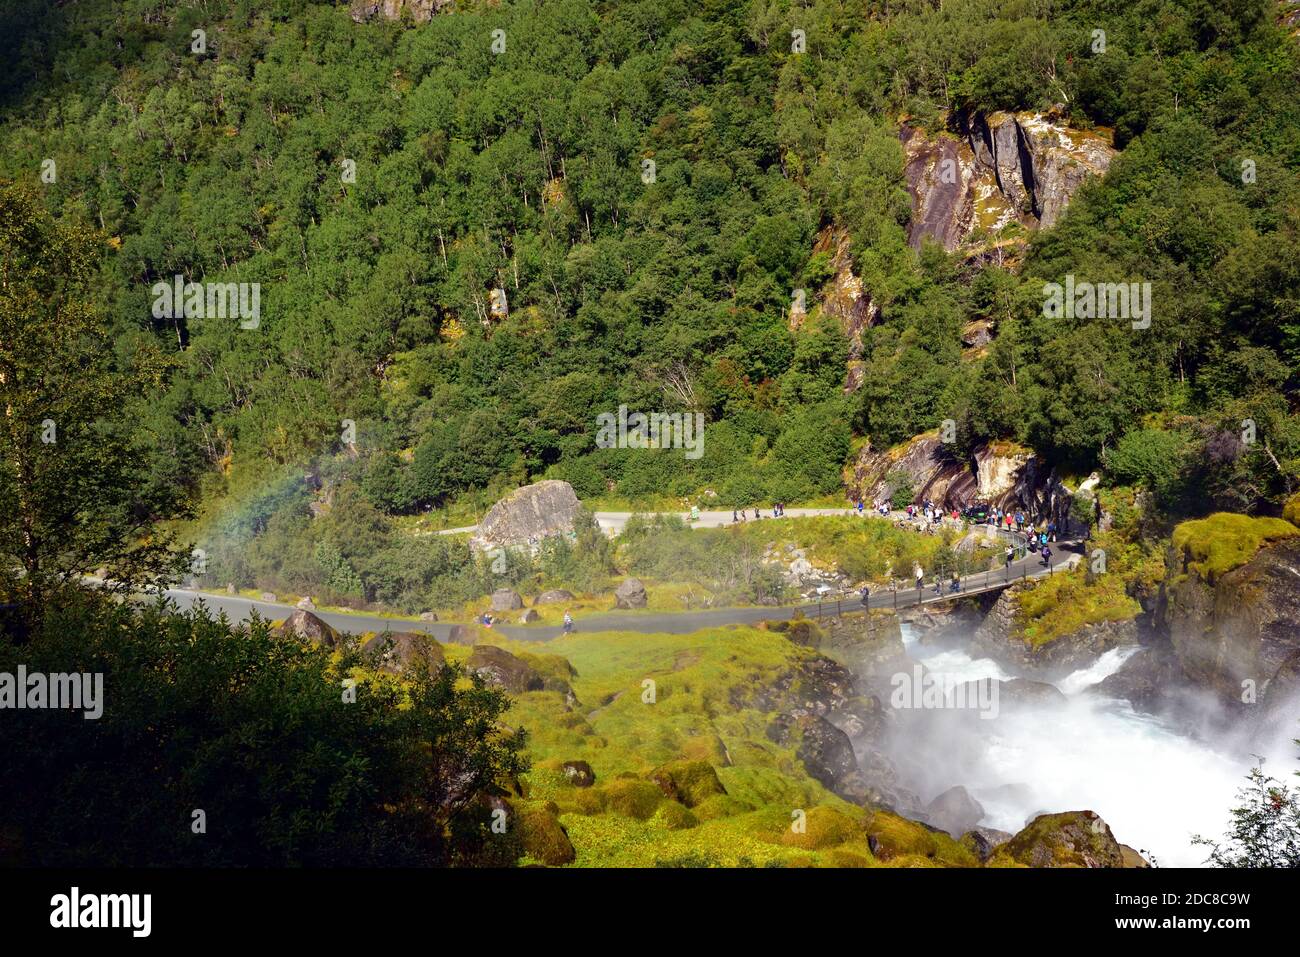 La cascata Kleivafossen e il sentiero per il ghiacciaio Briksdal, Norvegia, visto dall'alto Foto Stock